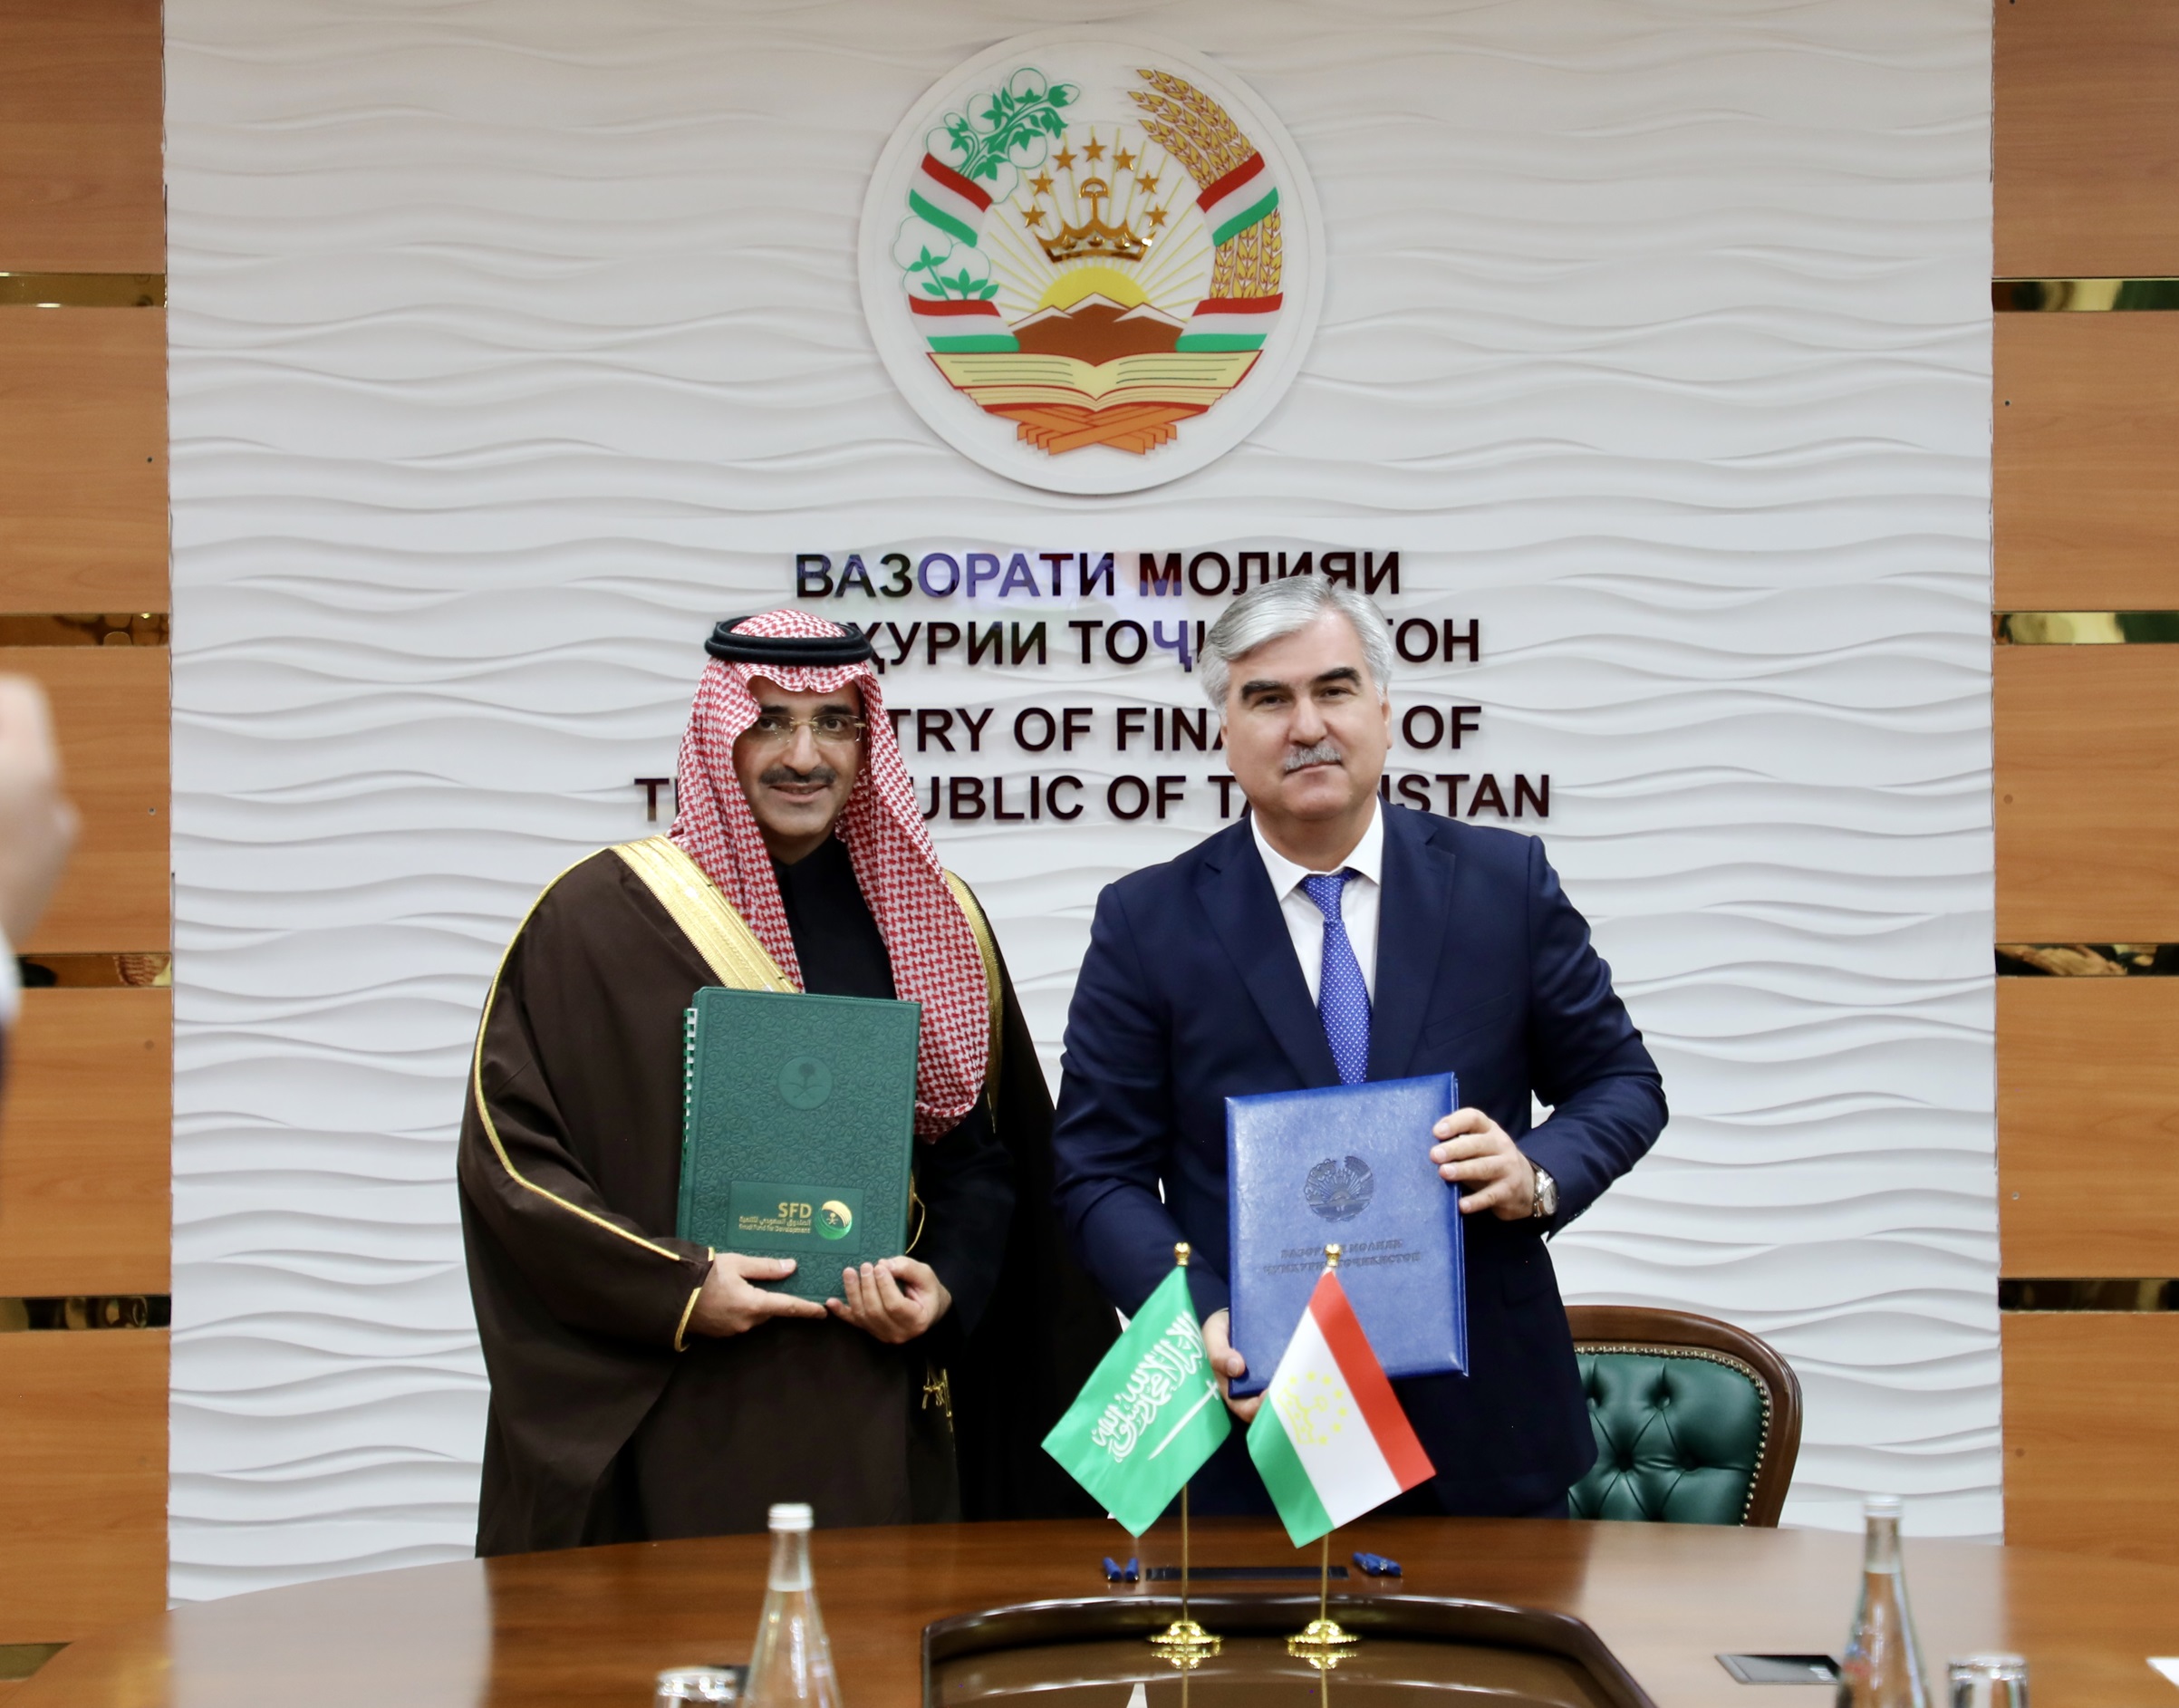 Le Fonds saoudien pour le développement accorde un prêt de développement de 100 millions de dollars pour le projet de la station hydroélectrique de Rogun